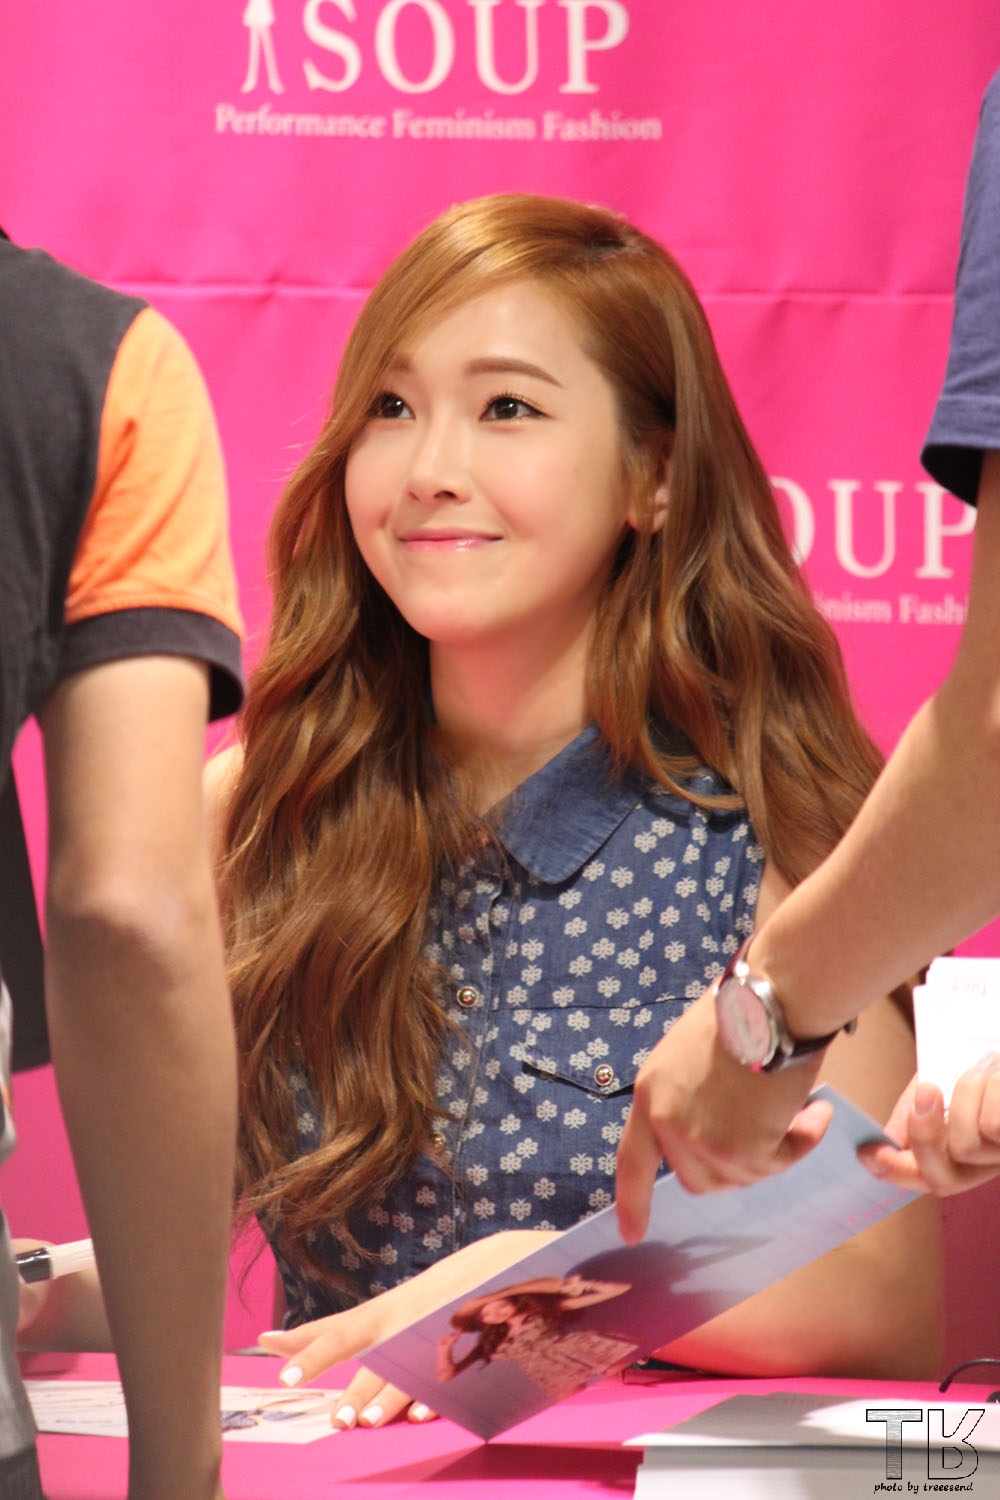 [PIC][14-06-2014]Jessica tham dự buổi fansign lần 2 cho thương hiệu "SOUP" vào trưa nay 24044C4A53AE8E6F2D756F